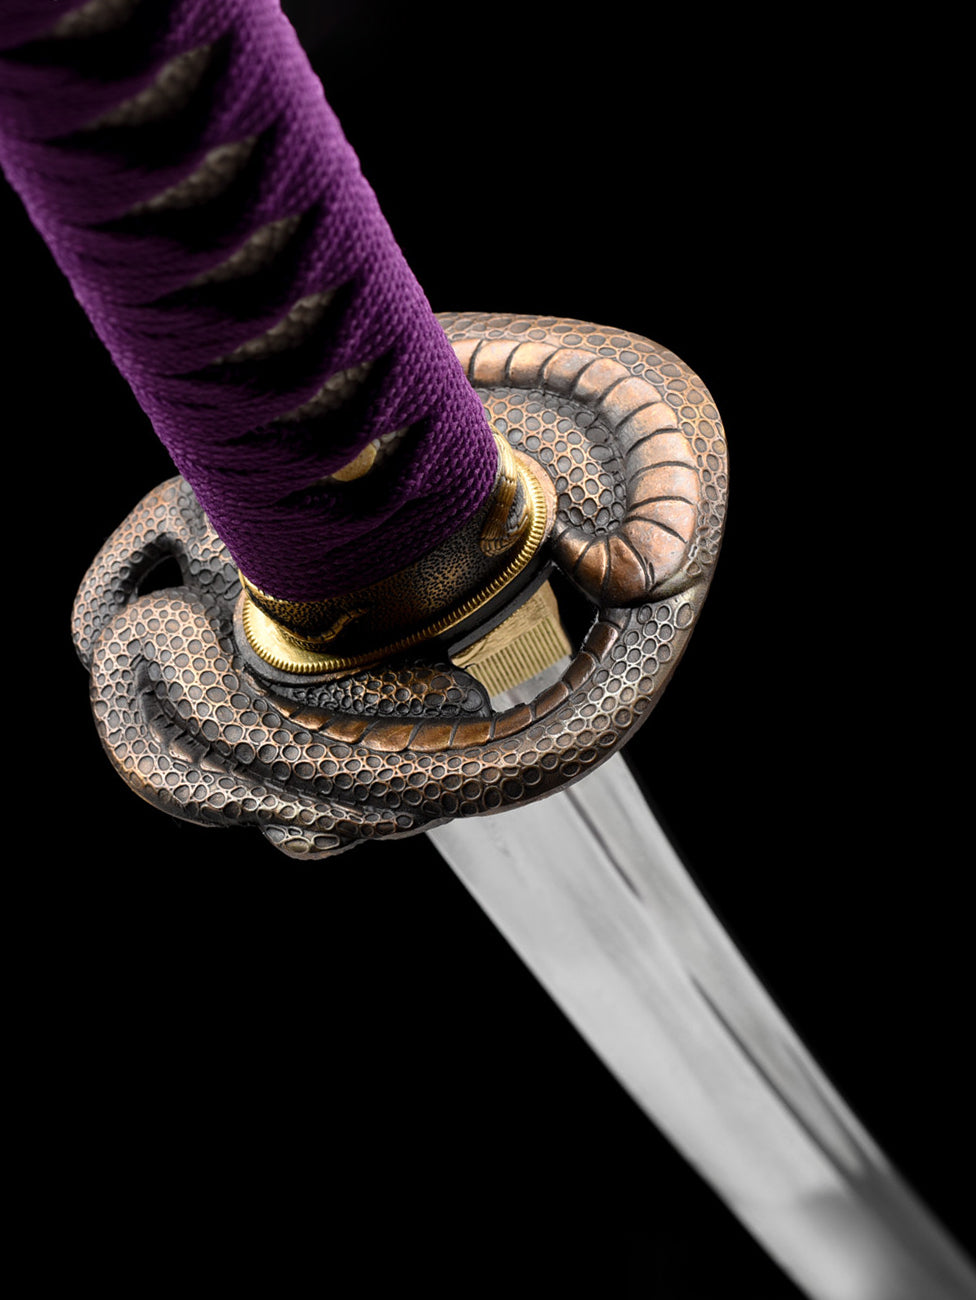 python katana Japanese sword forge folded steel Purple fog